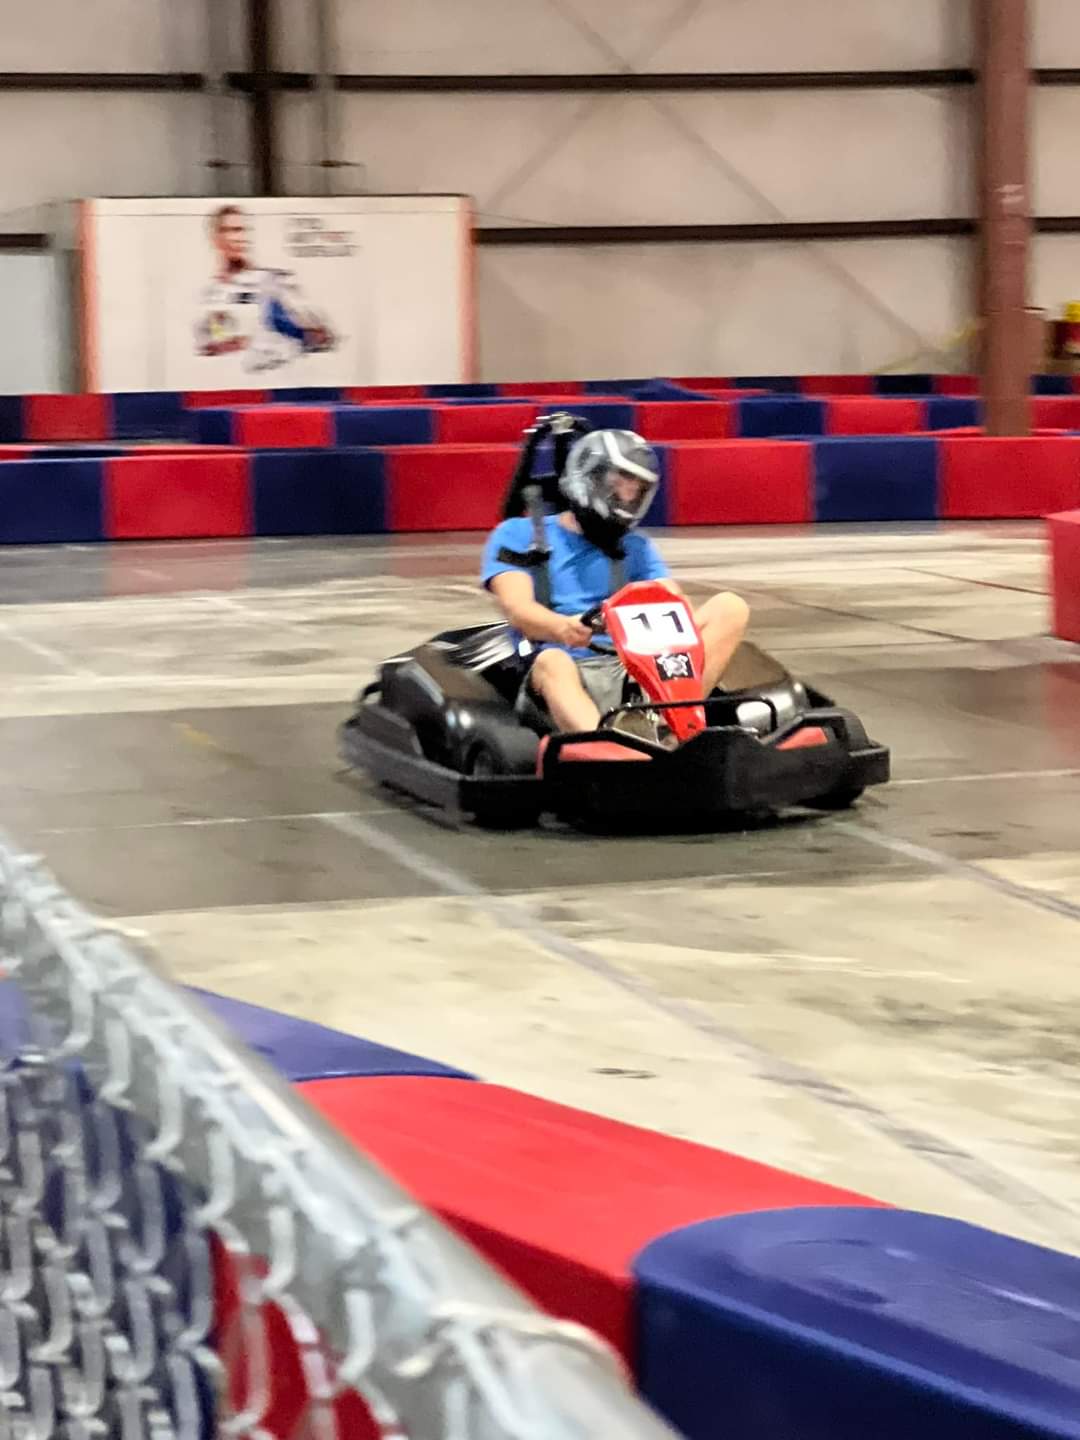 High Speed Go-Kart Racing